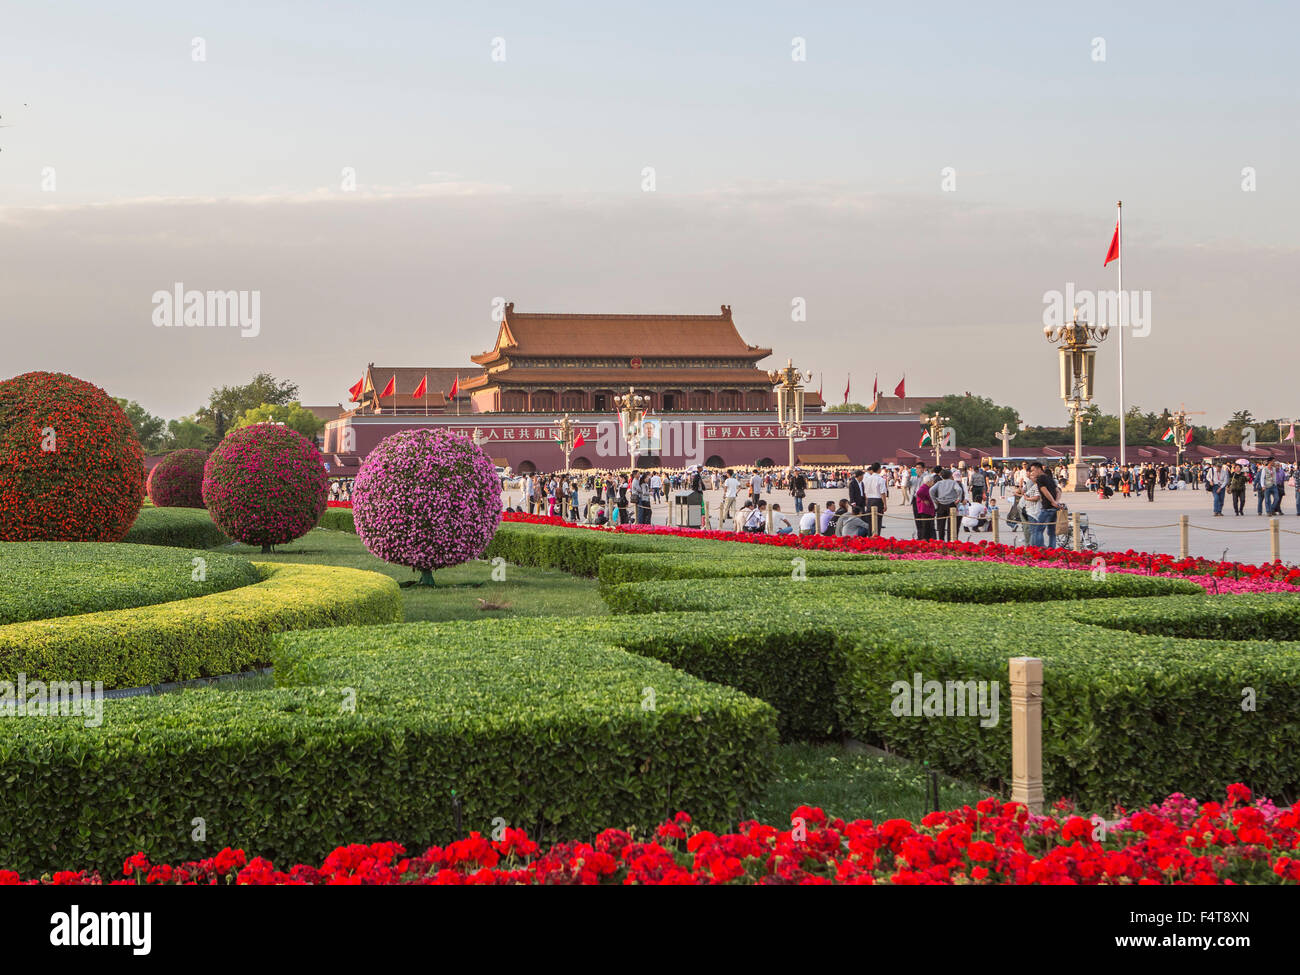 China, Beijing, Peking, City, Tian'anmen, Tiananmen Square, Gate of Heavenly Peace Stock Photo